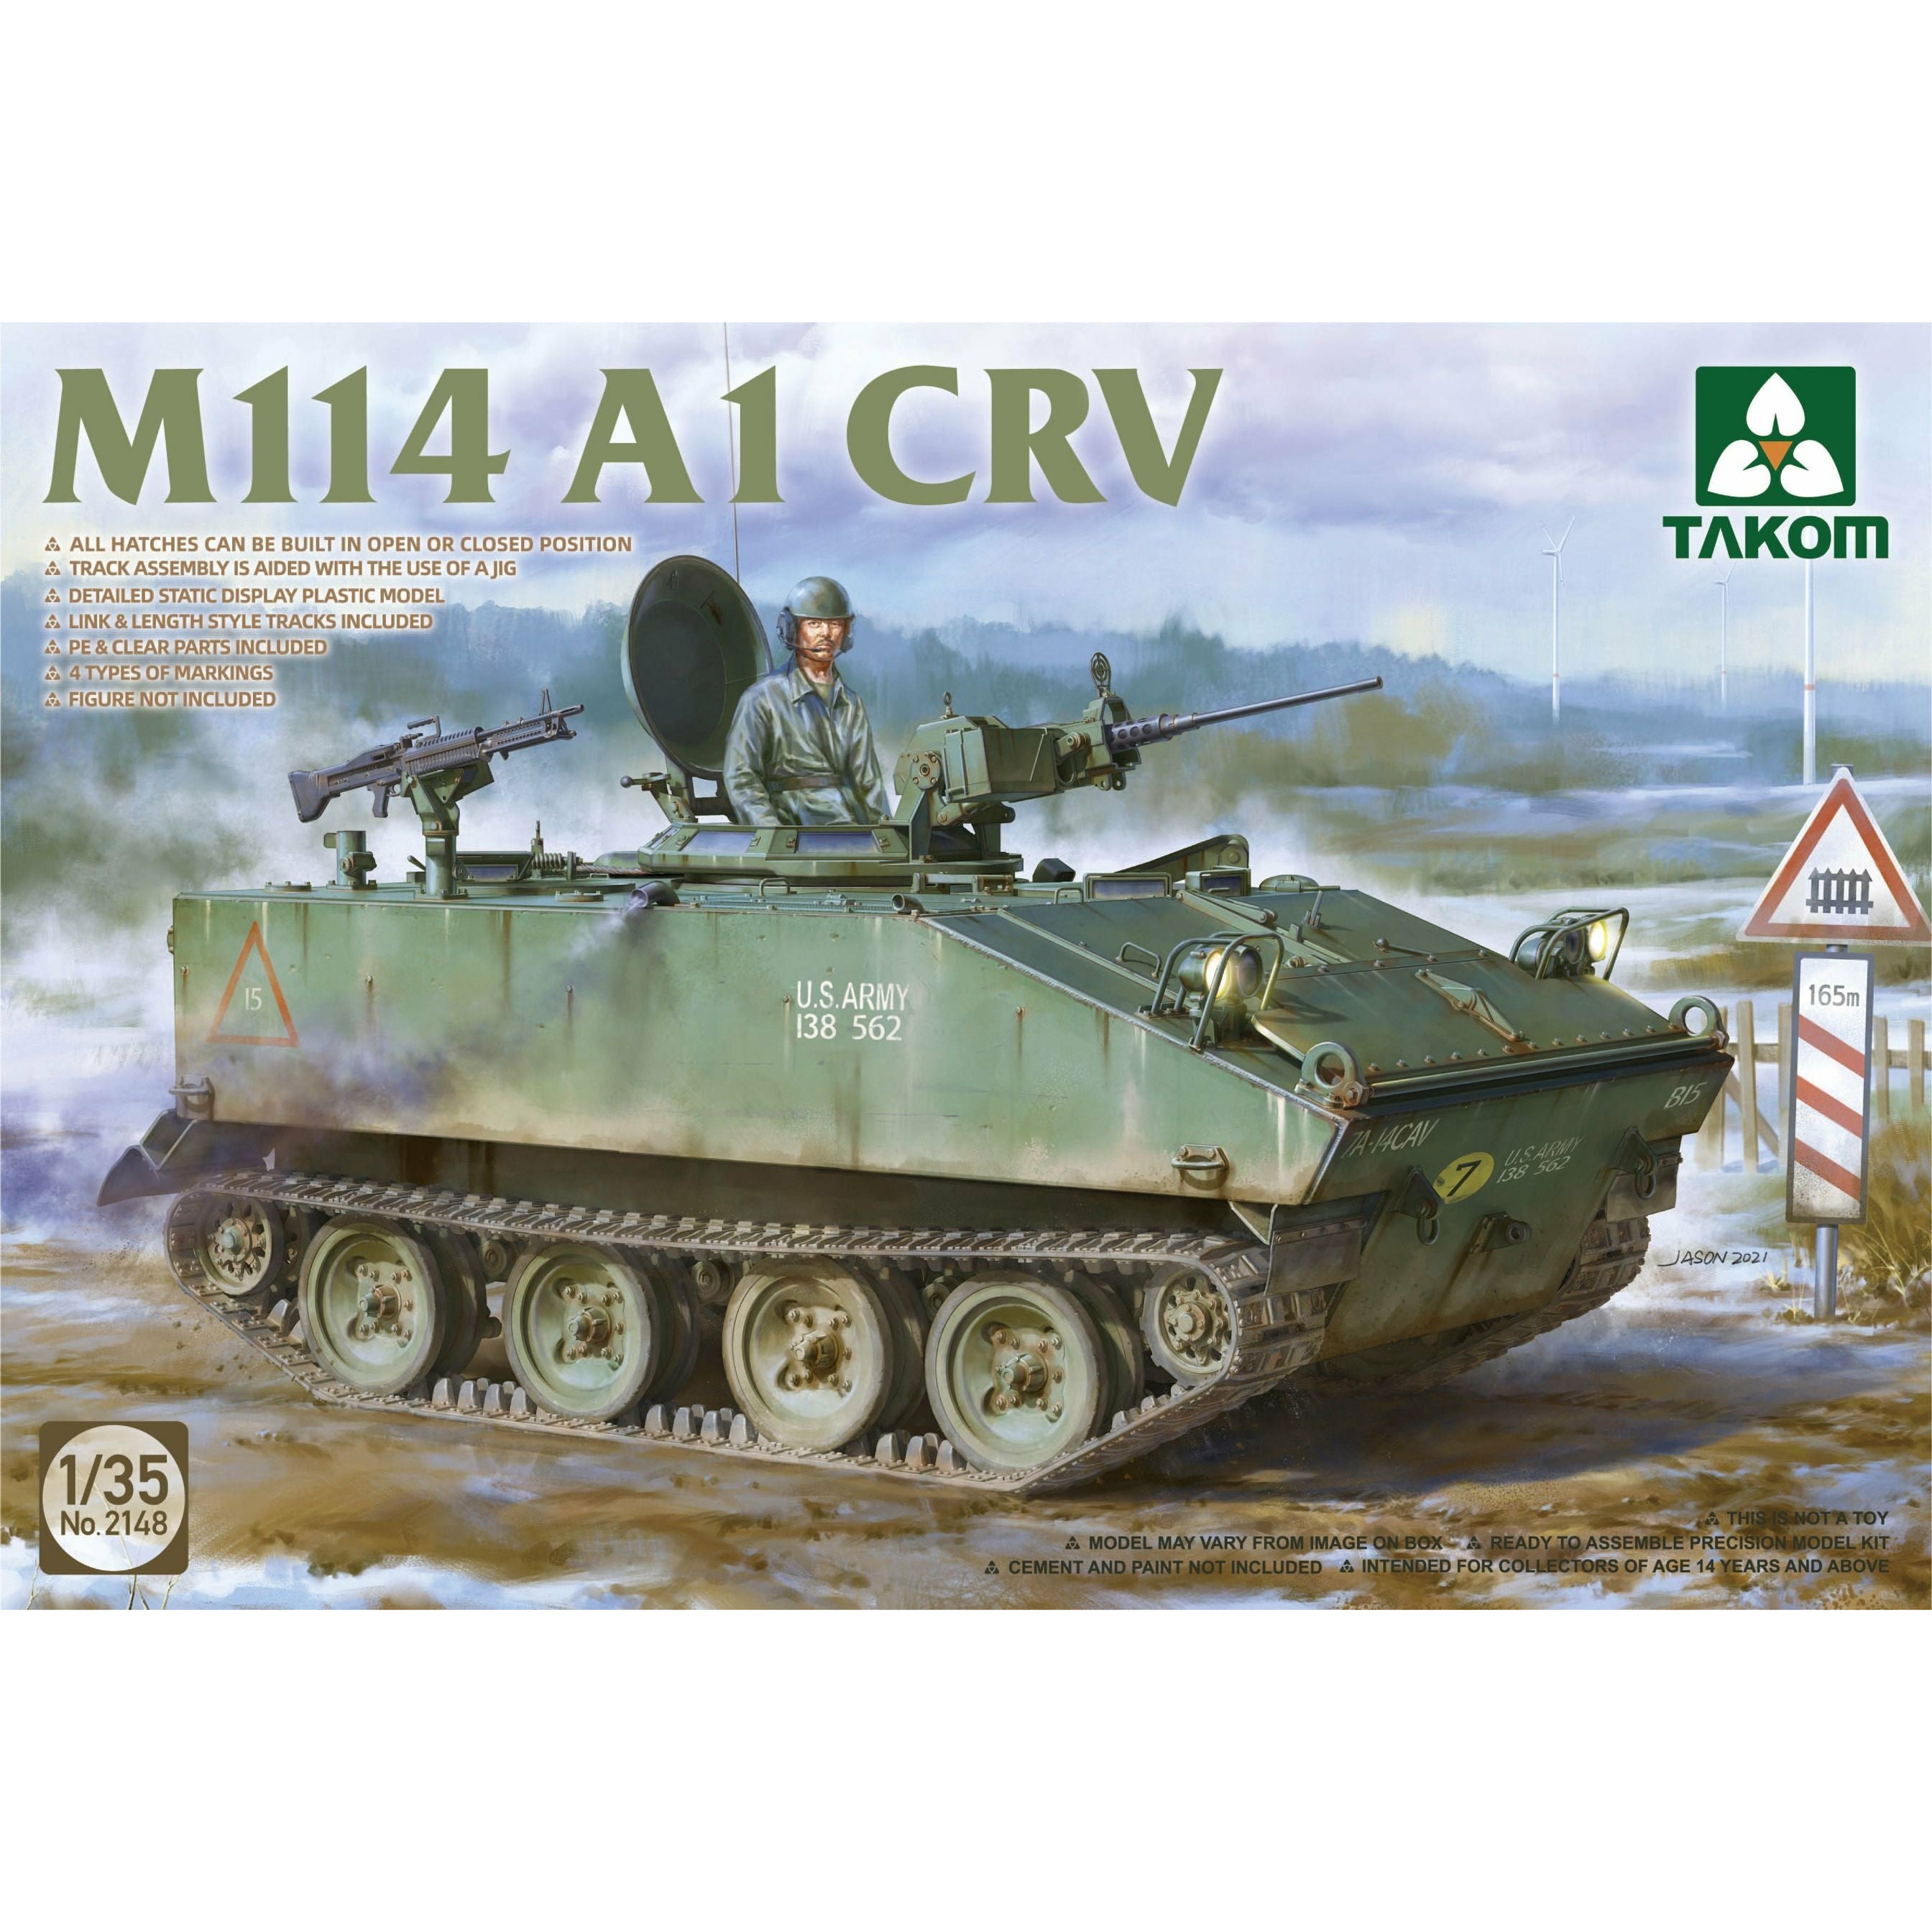 M114 A1 CRV 1/35 #2148 by Takom